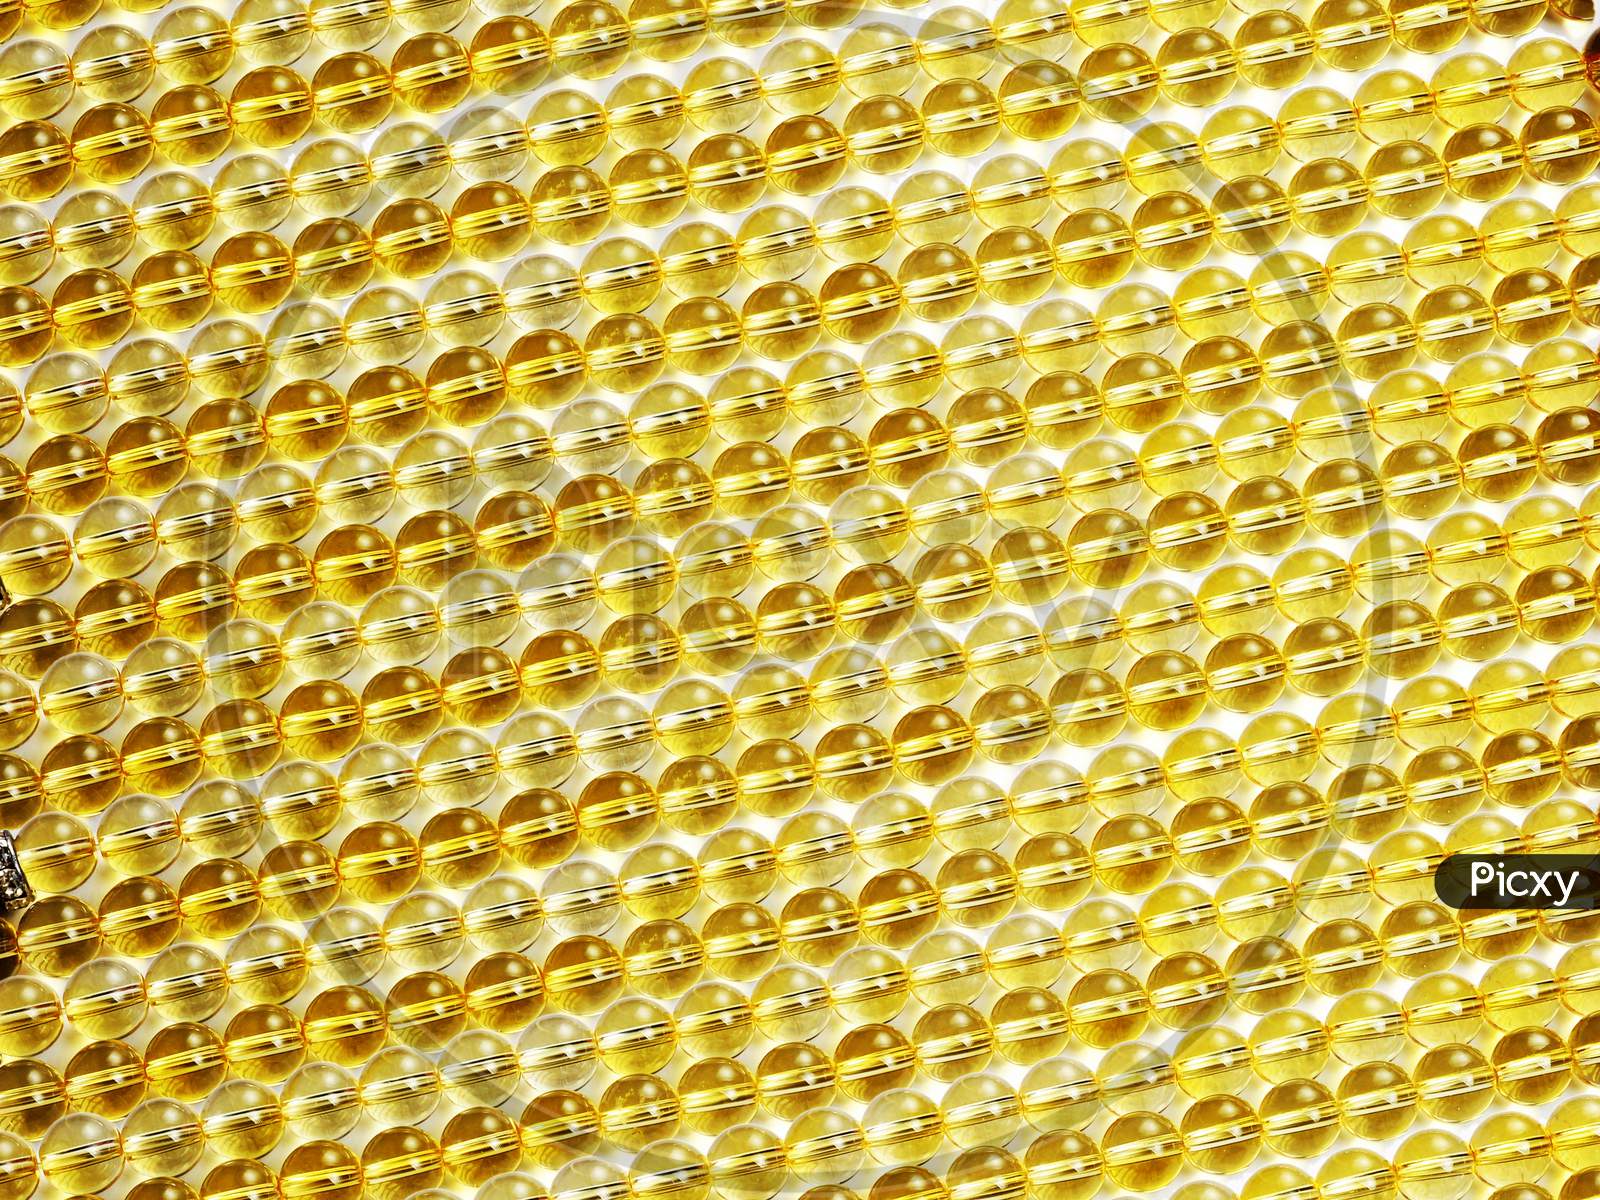 Sunny Yellow Gemstone Beads